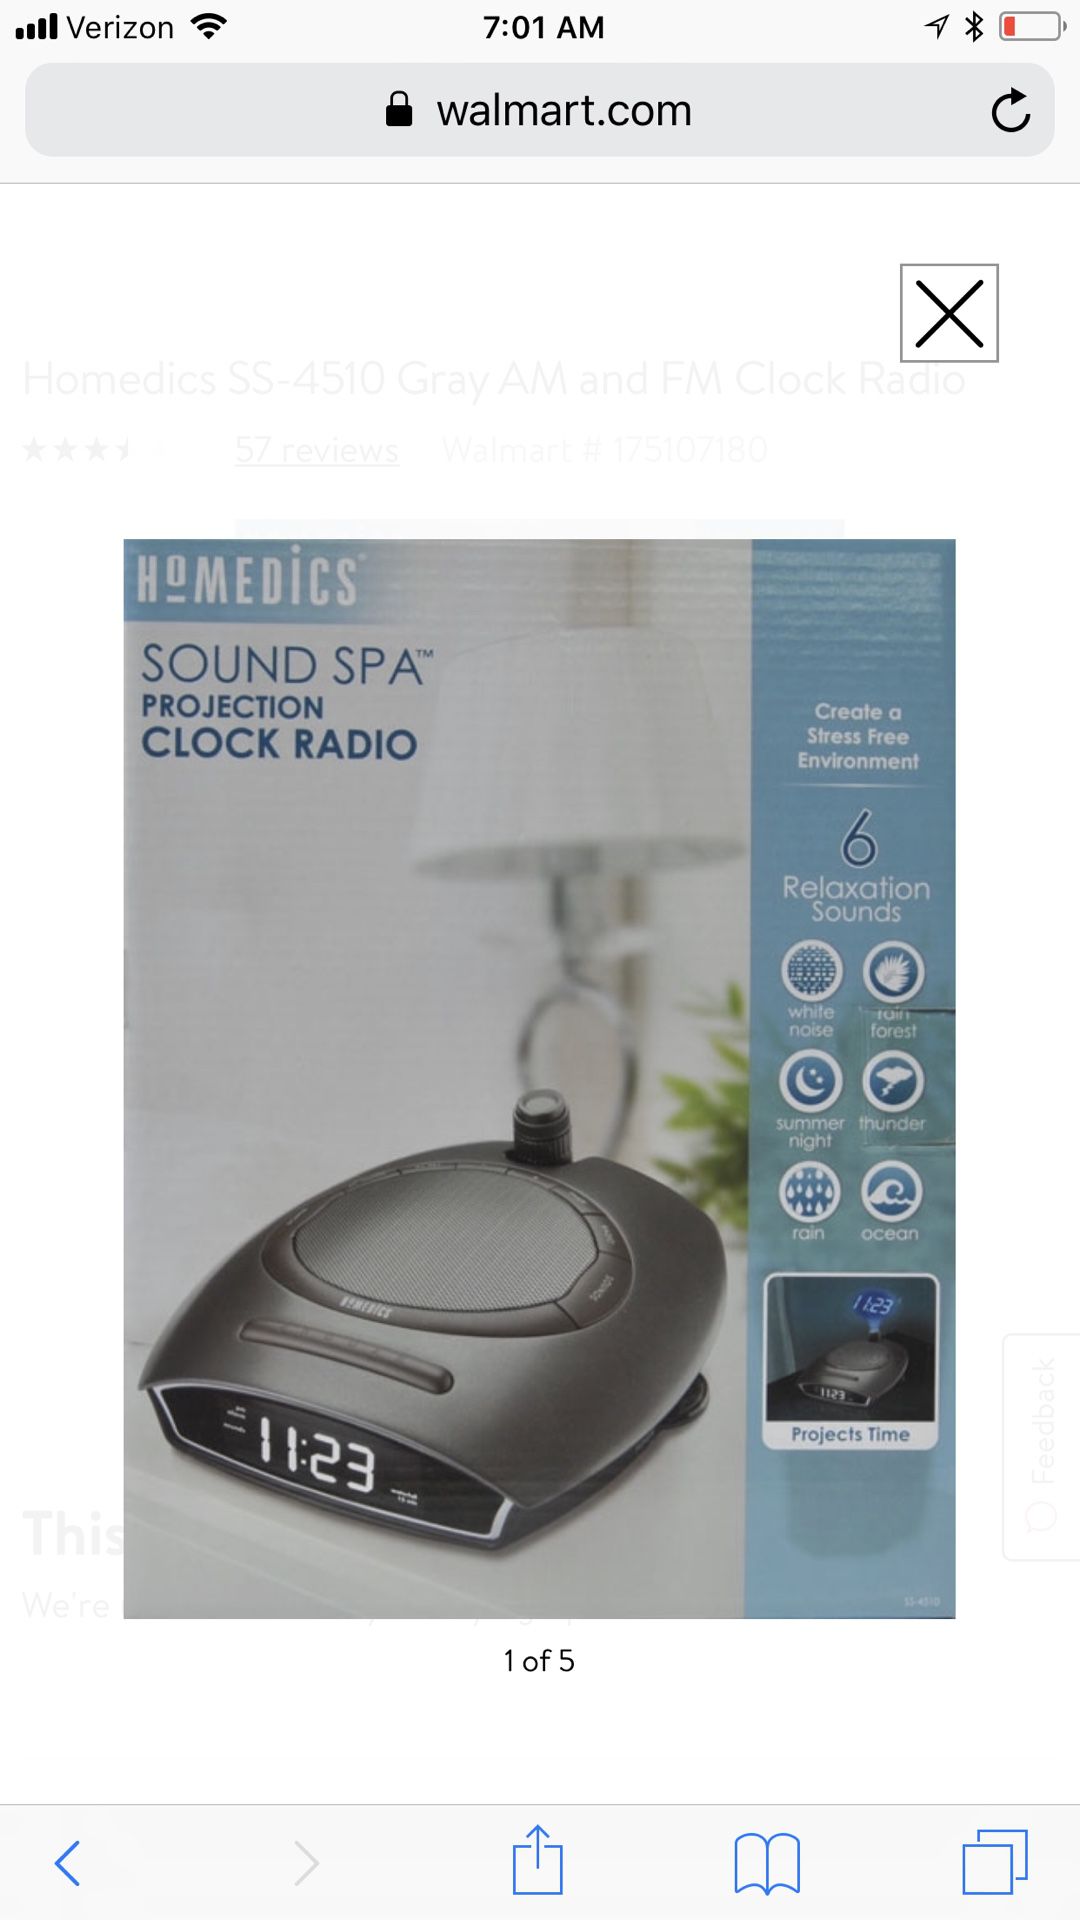 Homedics alarm clock